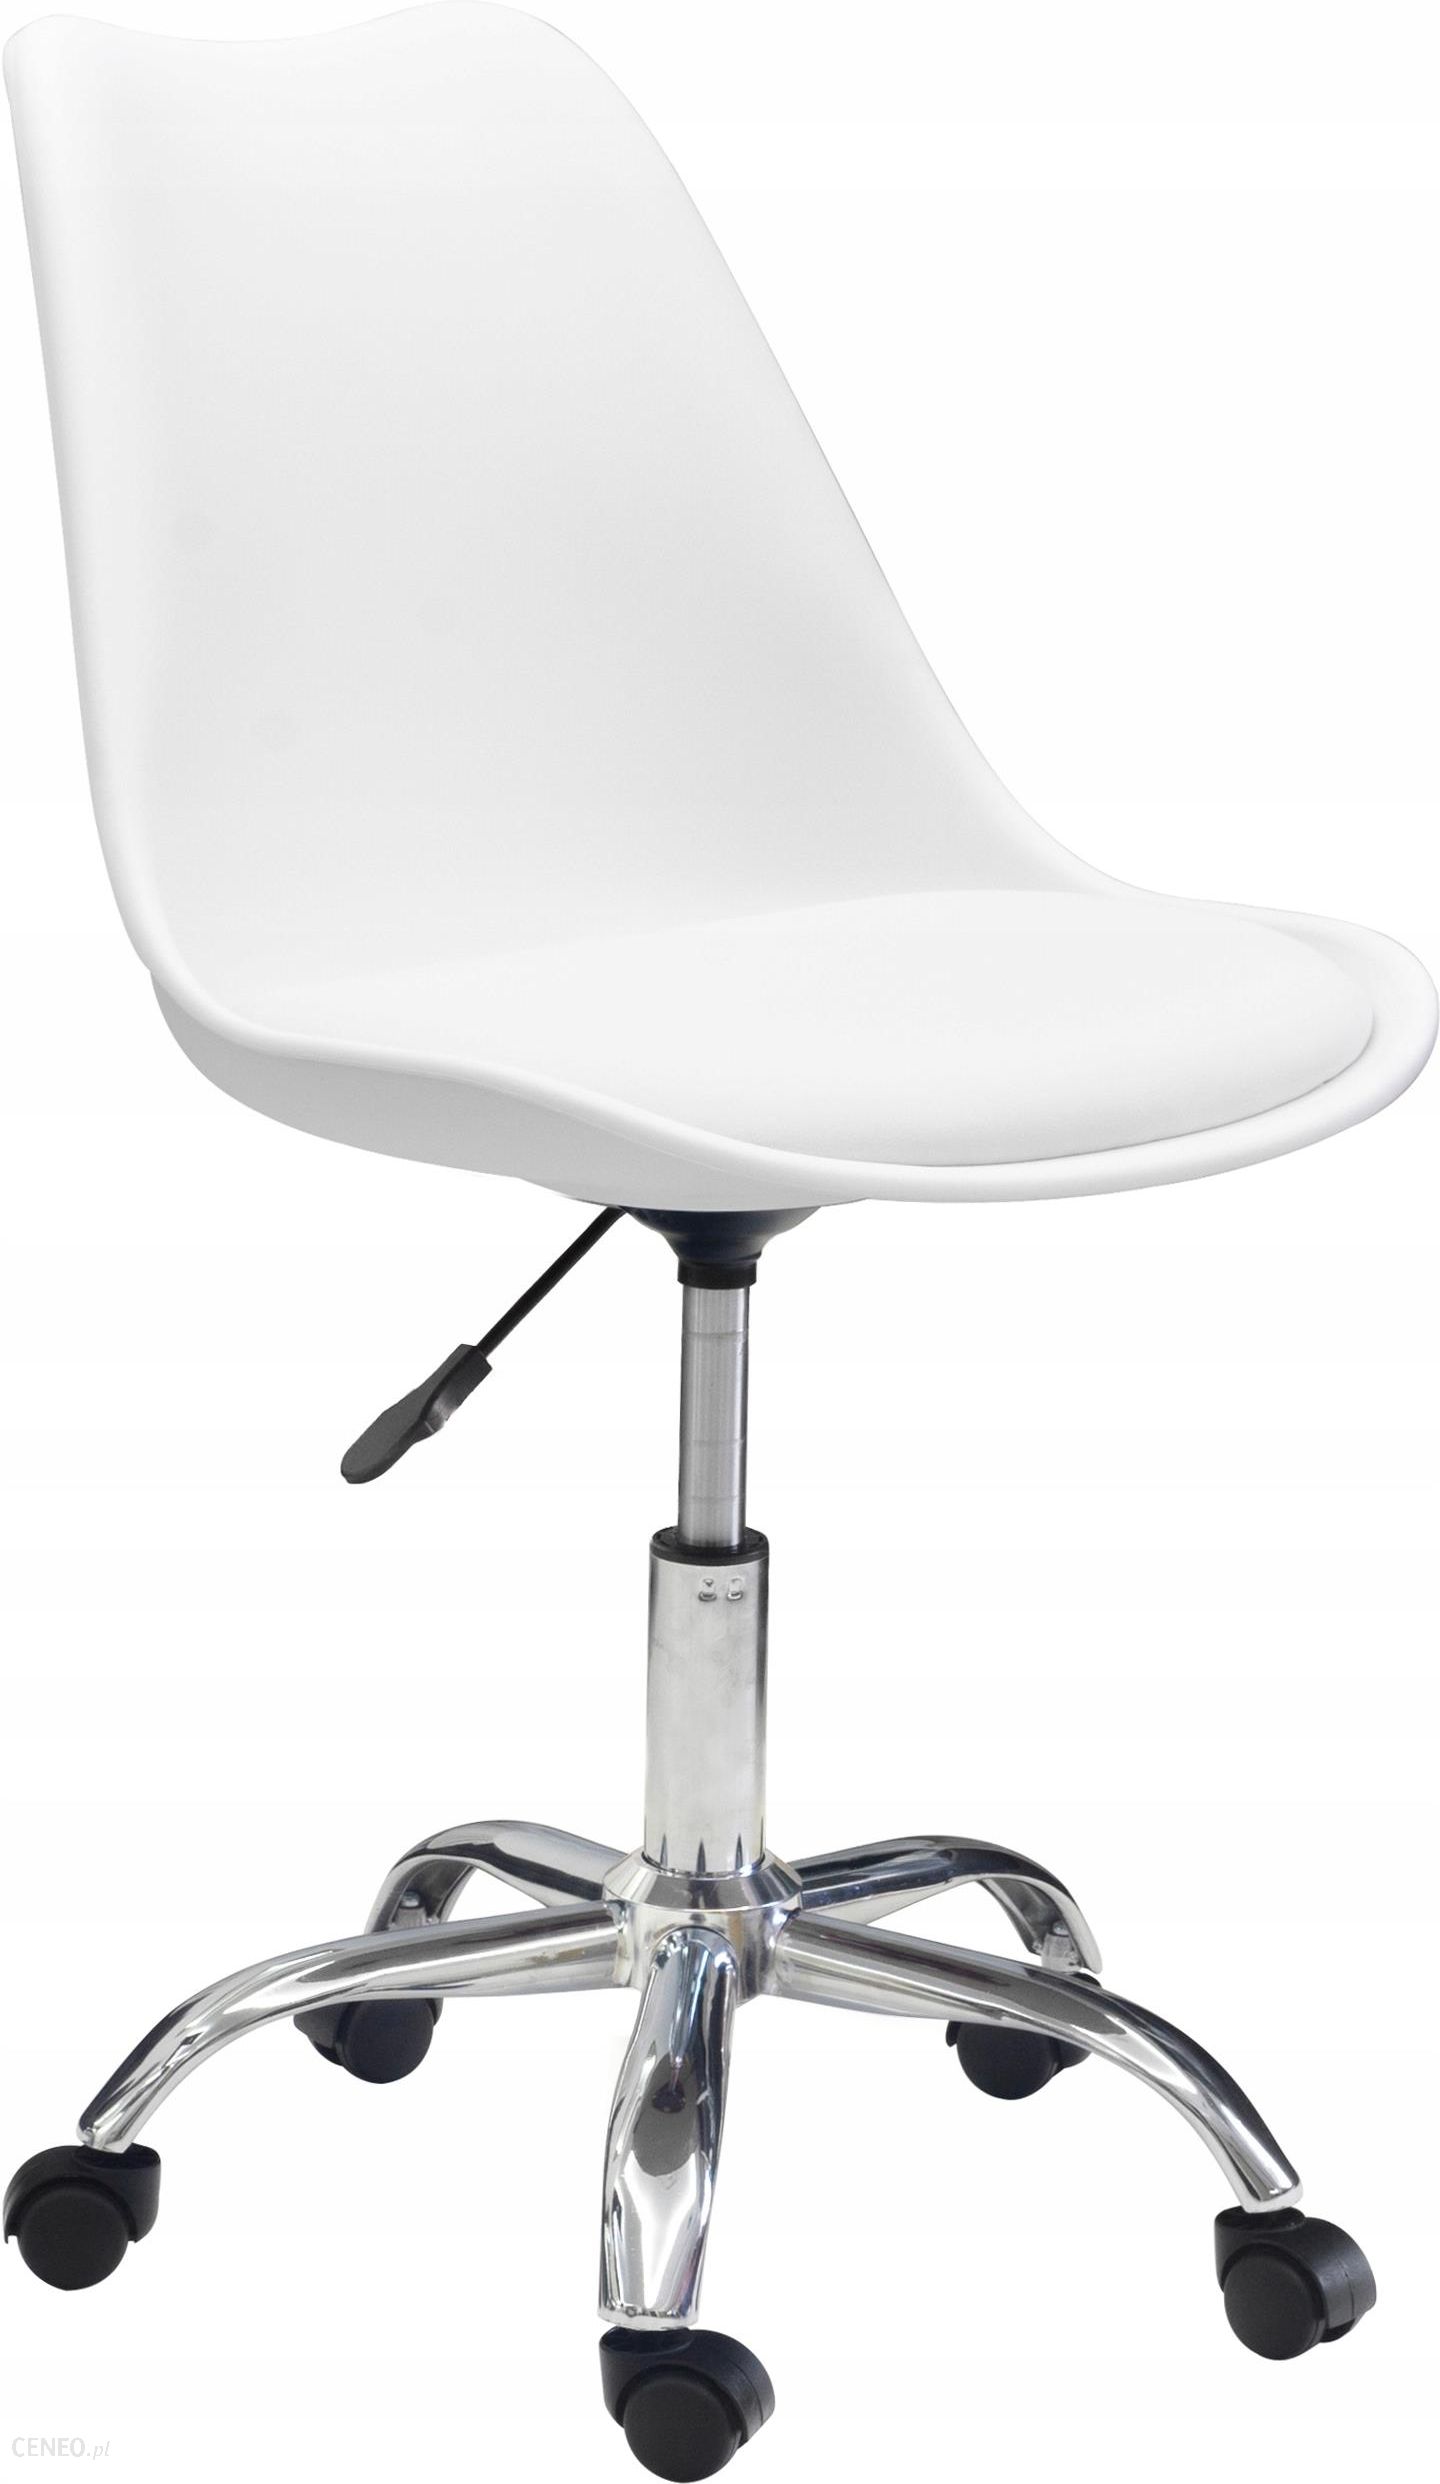 Krzeslo Obrotowe Fotel Biurowy Modern Oslo Biale Ceny I Opinie Ceneo Pl